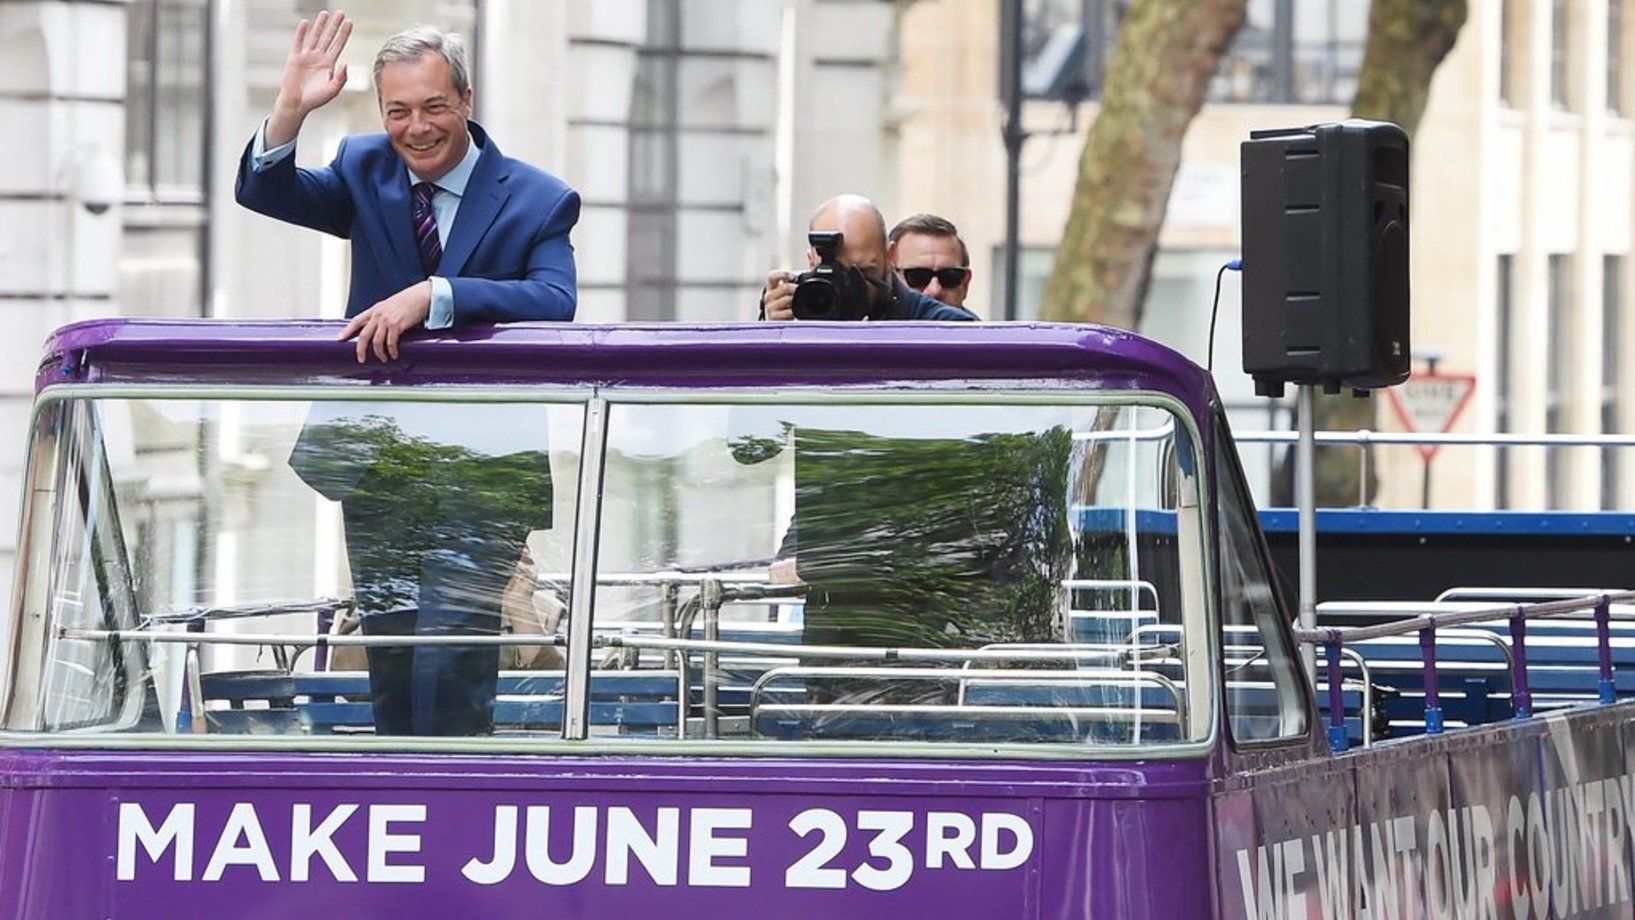 Nigel Farage, der Führer der britischen "United Kingdom Independence Party" (UKIP) hat am Freitag seine Bus-Tour durch Grossbritannien begonnen. Er wirbt für einen Austritt des Landes aus der EU. (Foto: Keystone/EPA/Facundo Arrizabalaga)
